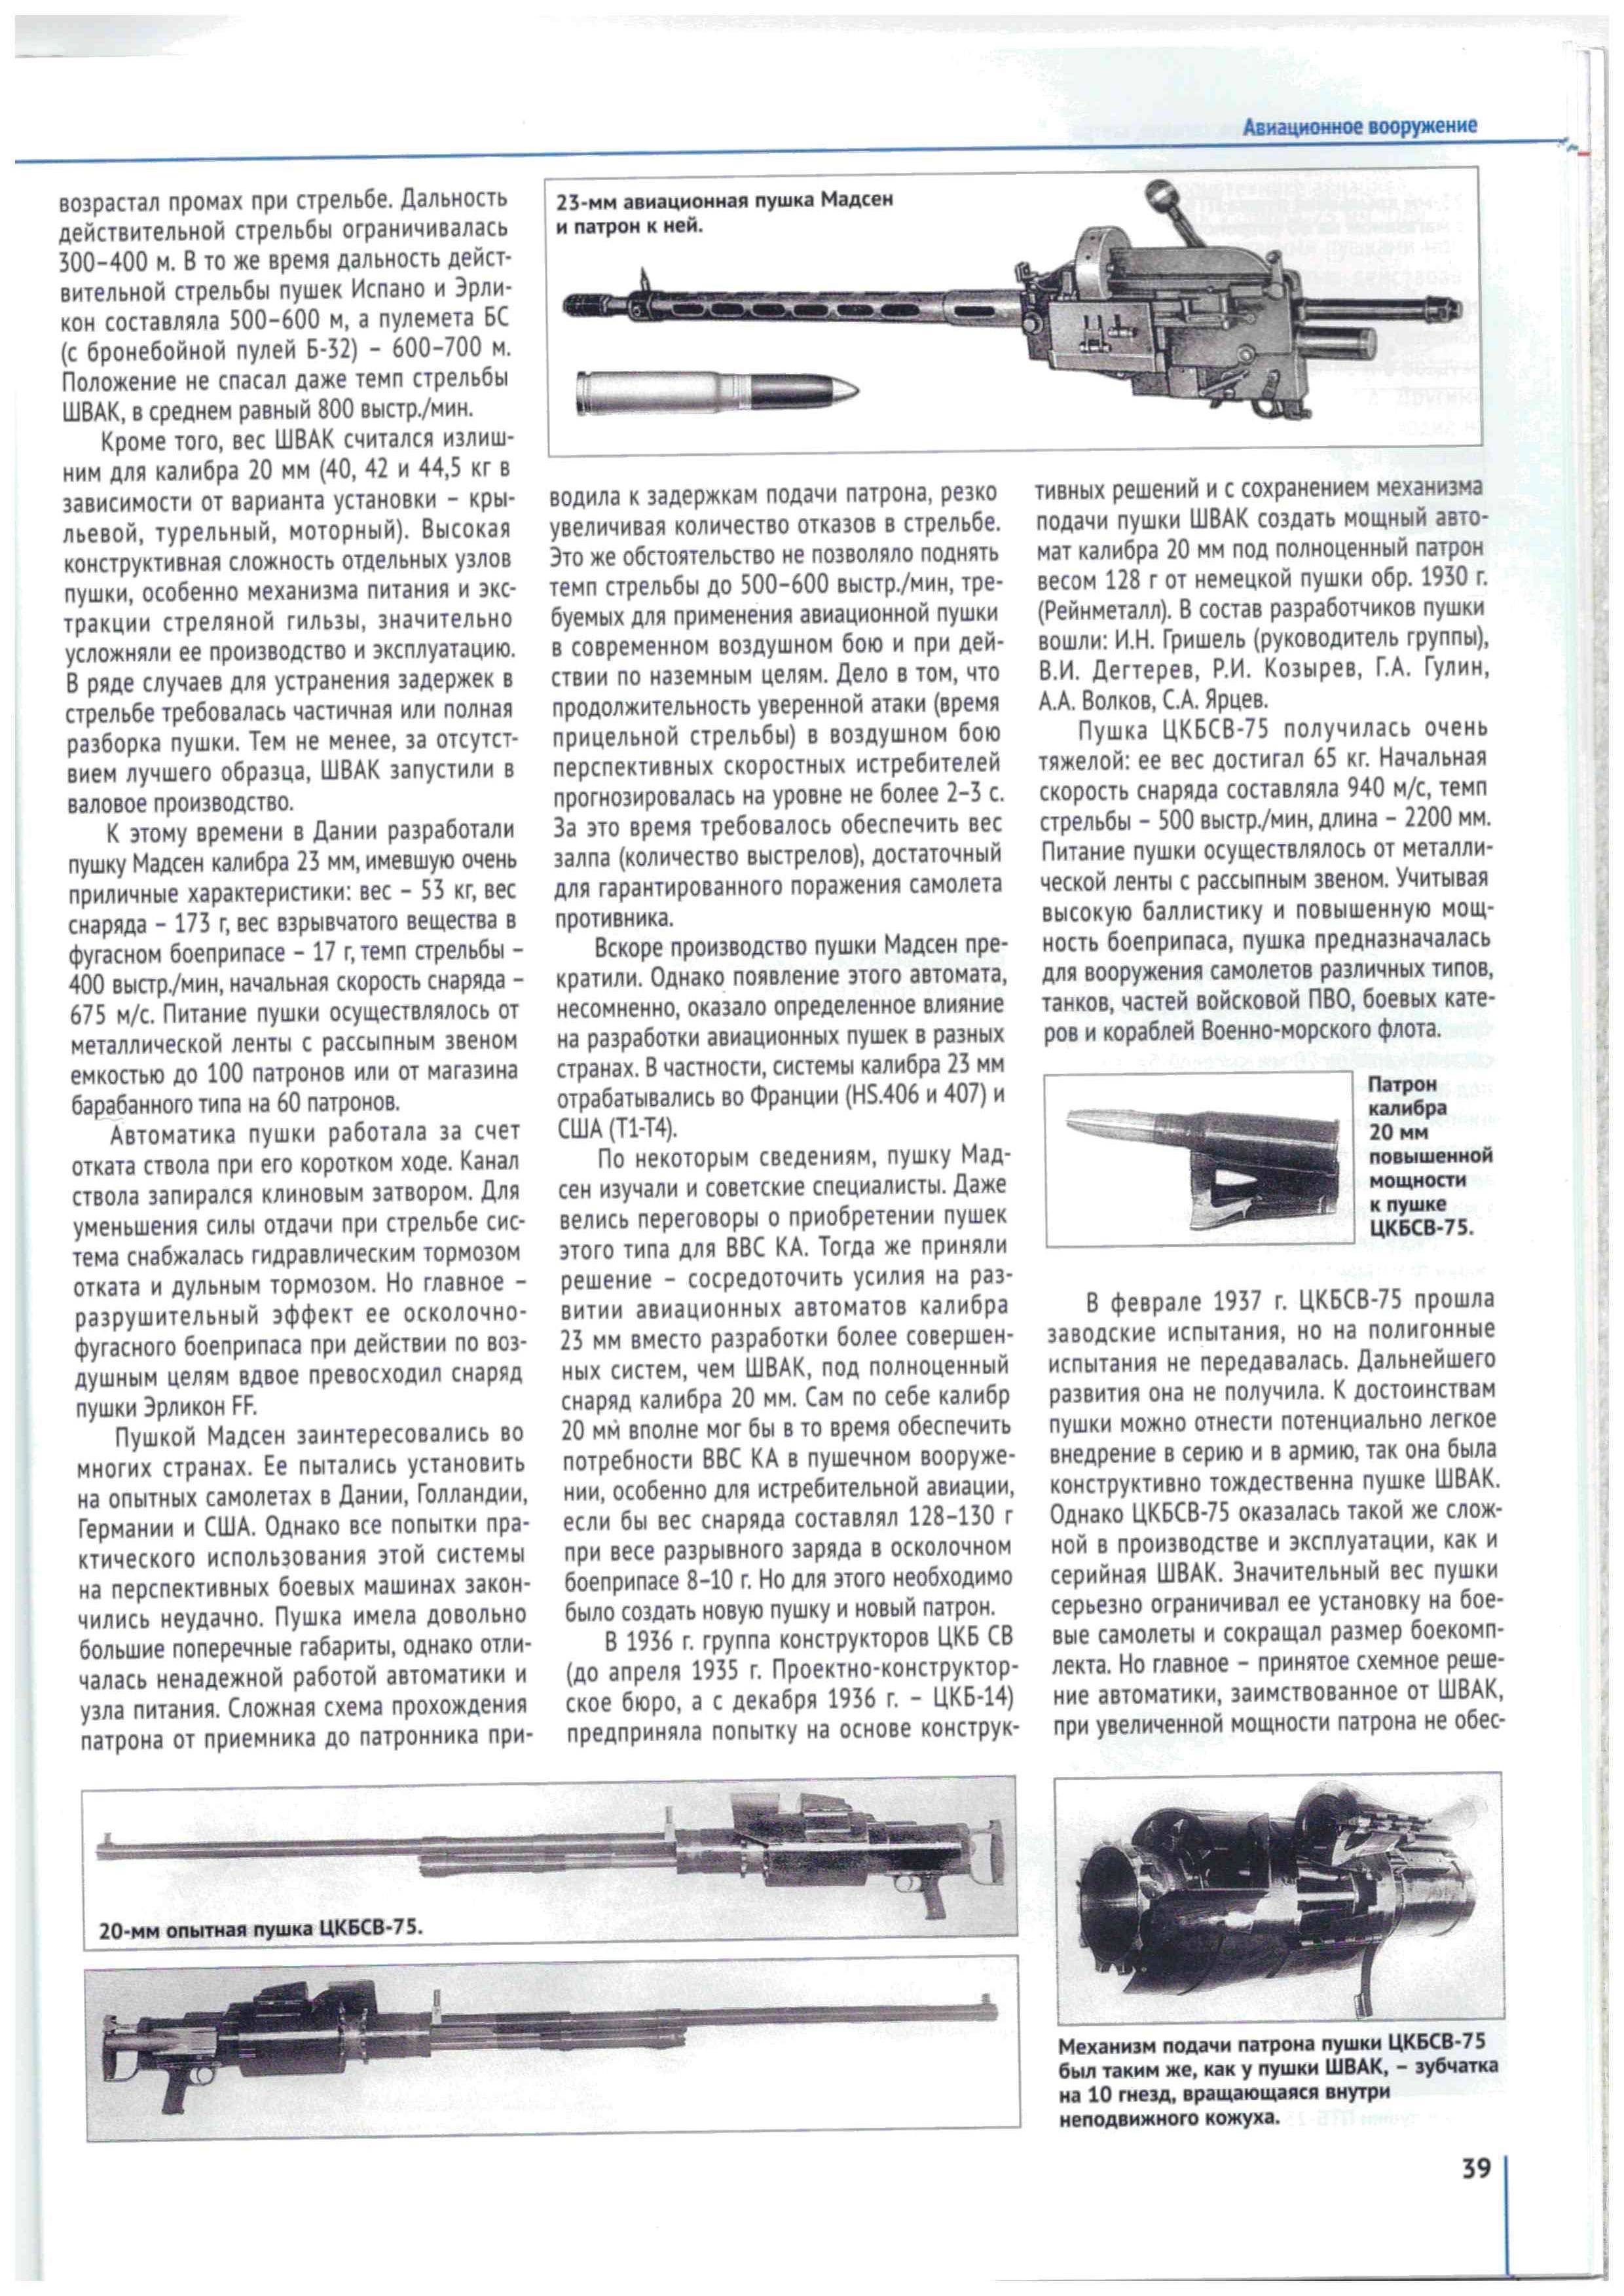 Авиационные пушки. швак – скорострельная пила советских истребителей